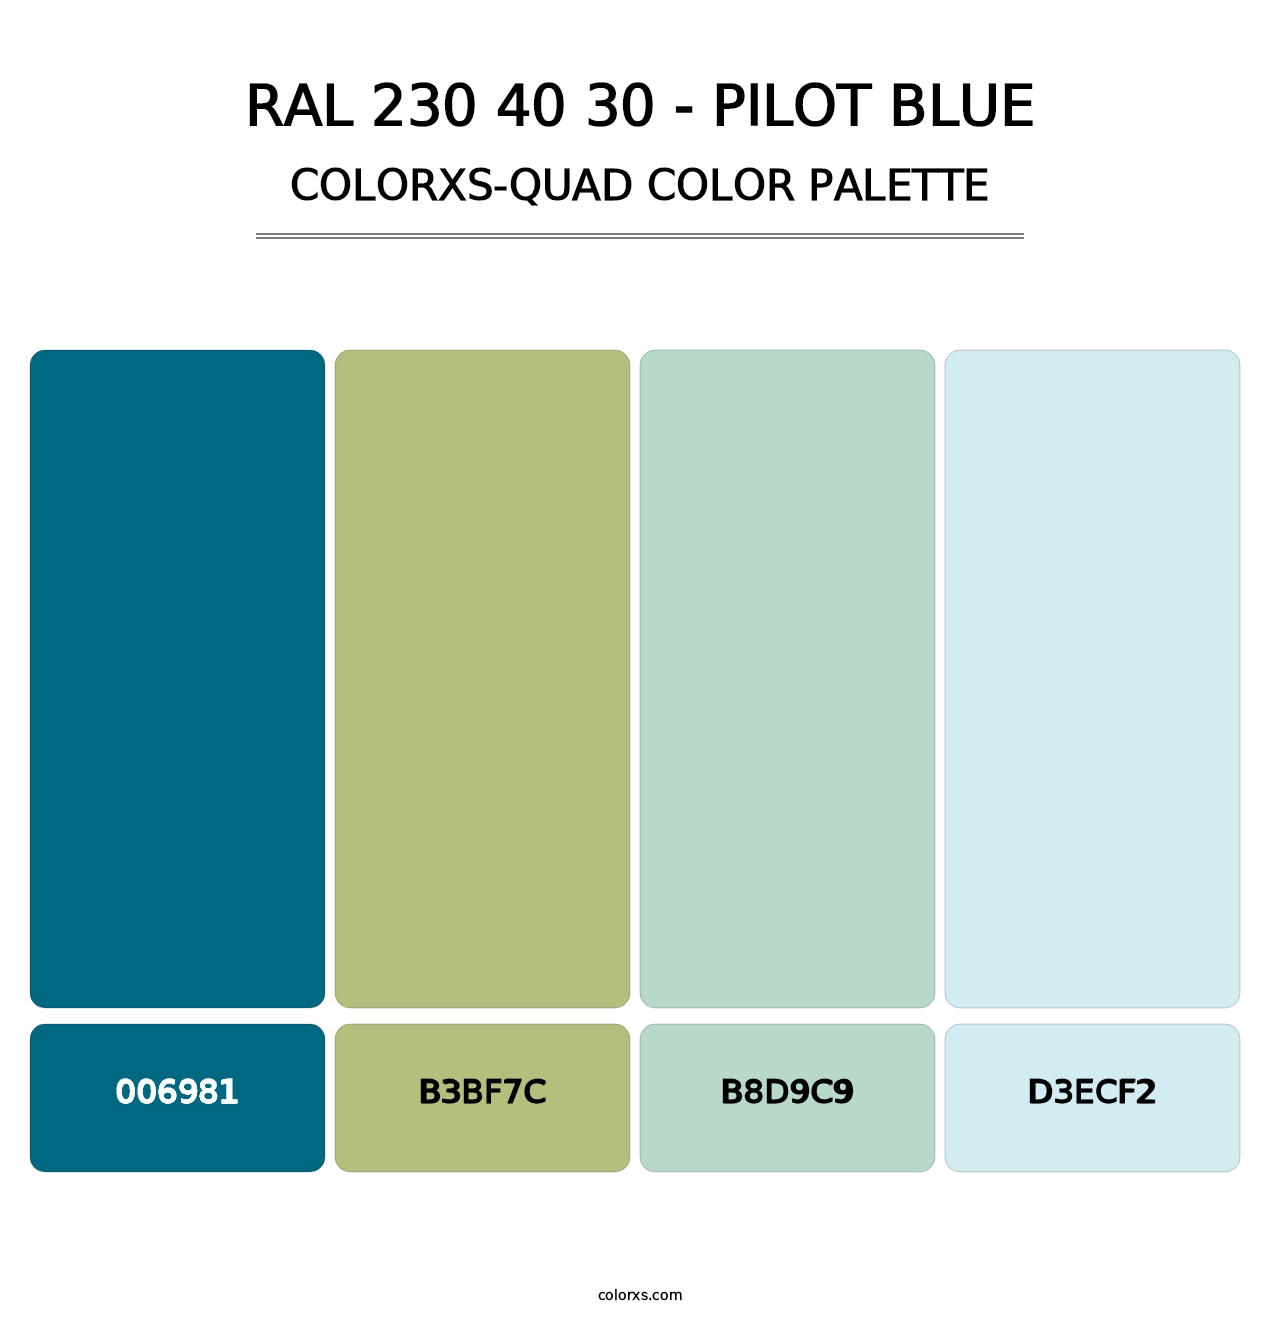 RAL 230 40 30 - Pilot Blue - Colorxs Quad Palette